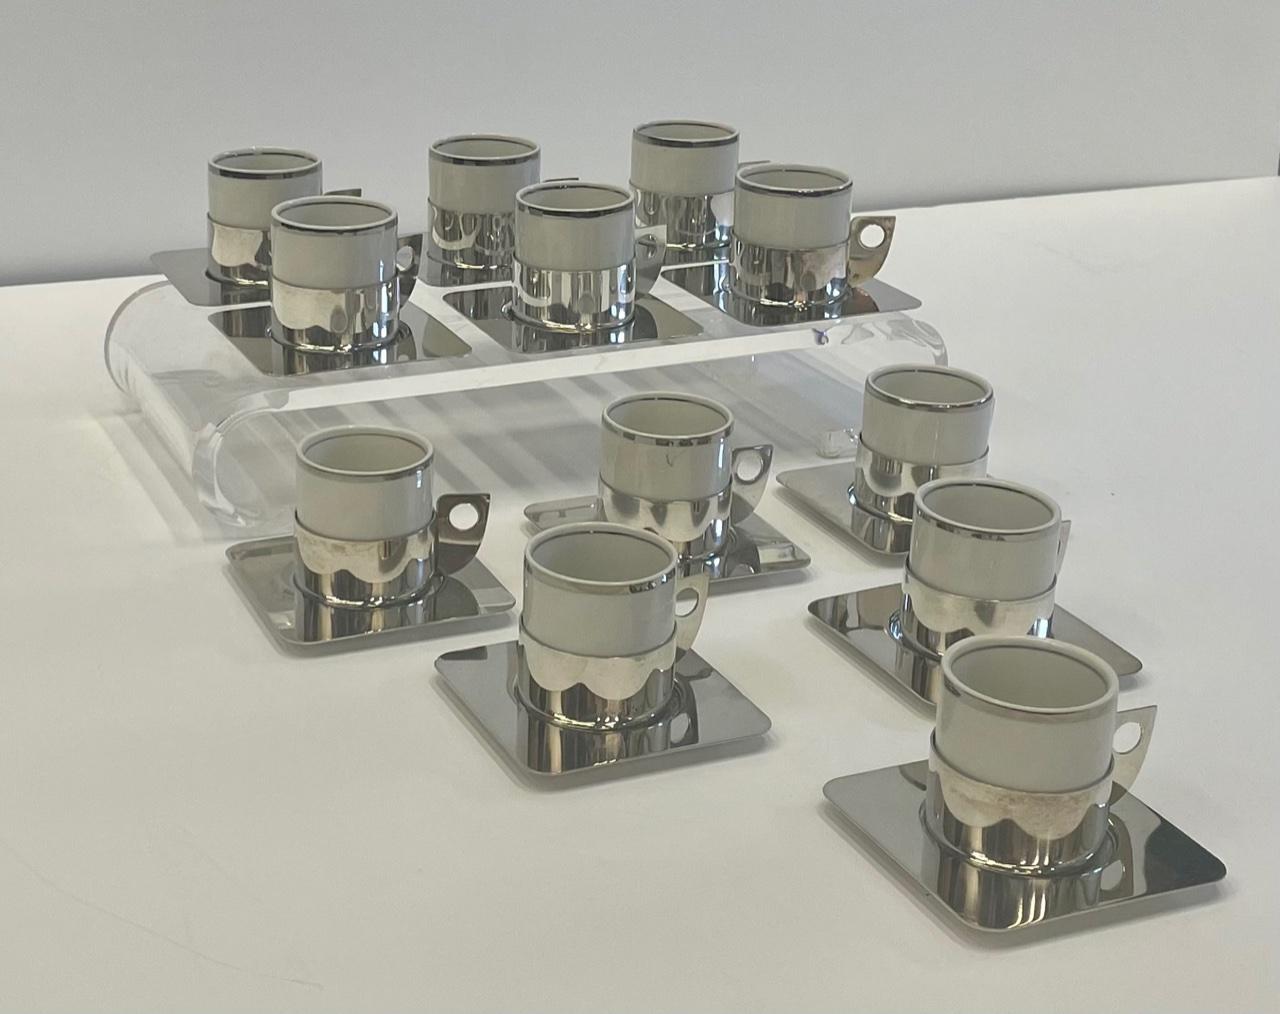 Stilvolles Set aus 12 Tassen und Untertassen mit einer Mischung aus Silberblech und weißem Porzellan. Die Tassen sind 2